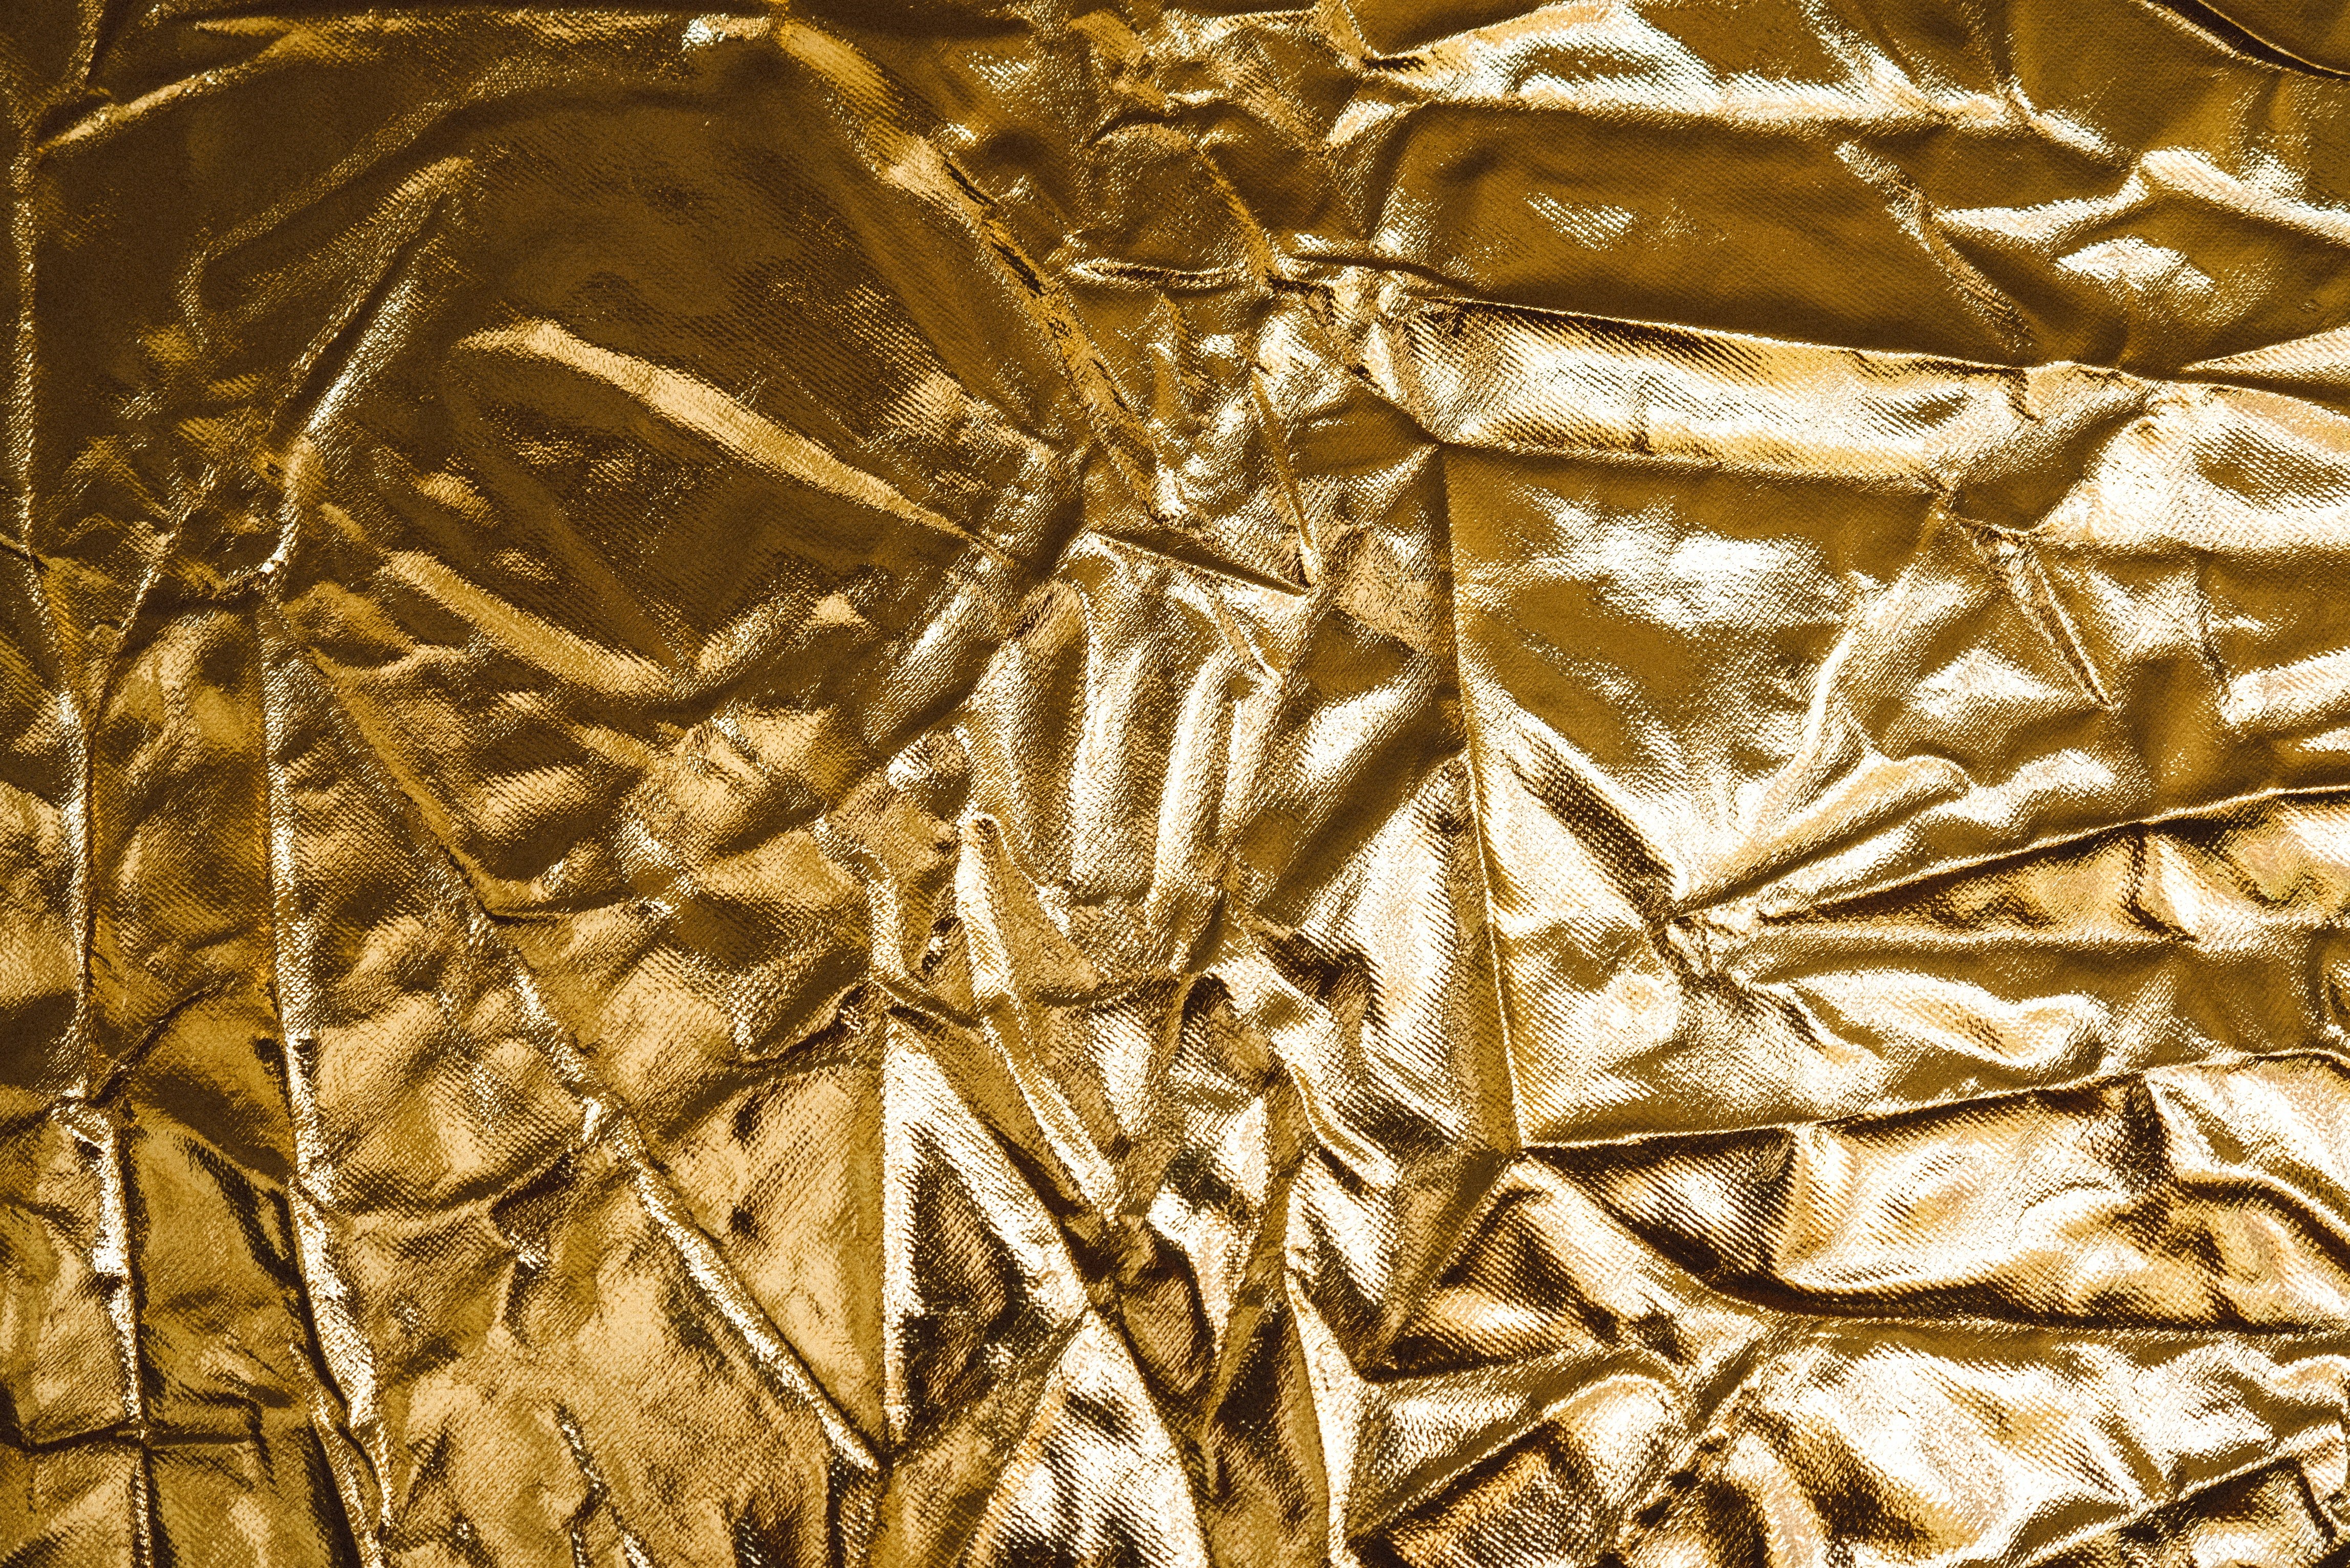 Российские ученые научились добывать золото из отходов